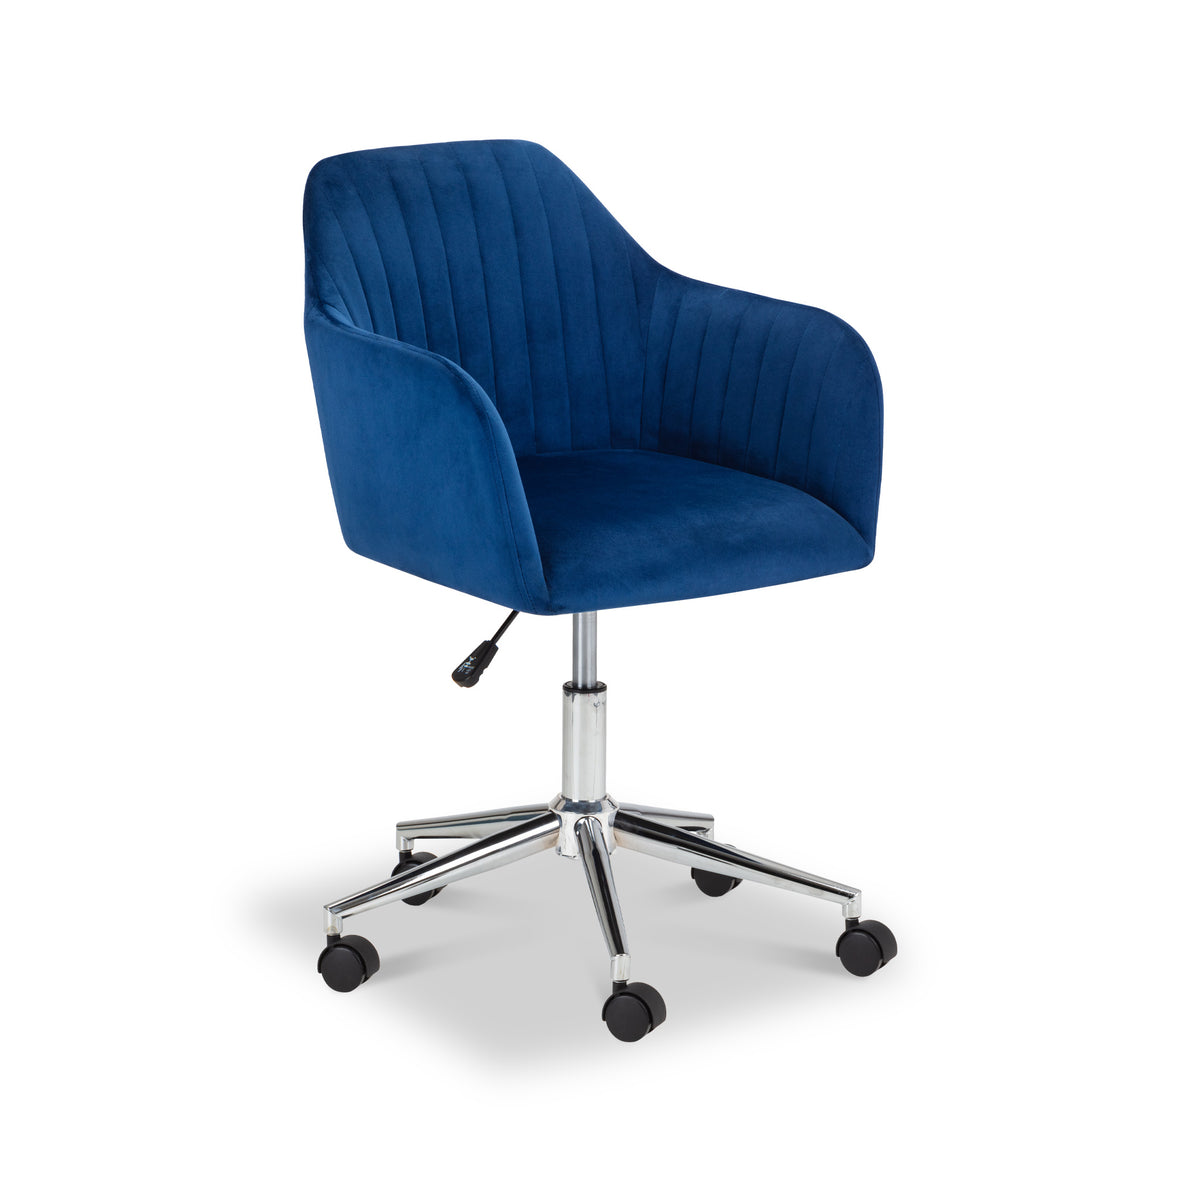 Malvern Navy Blue Velvet Swivel Office Chair from Roseland Furniture